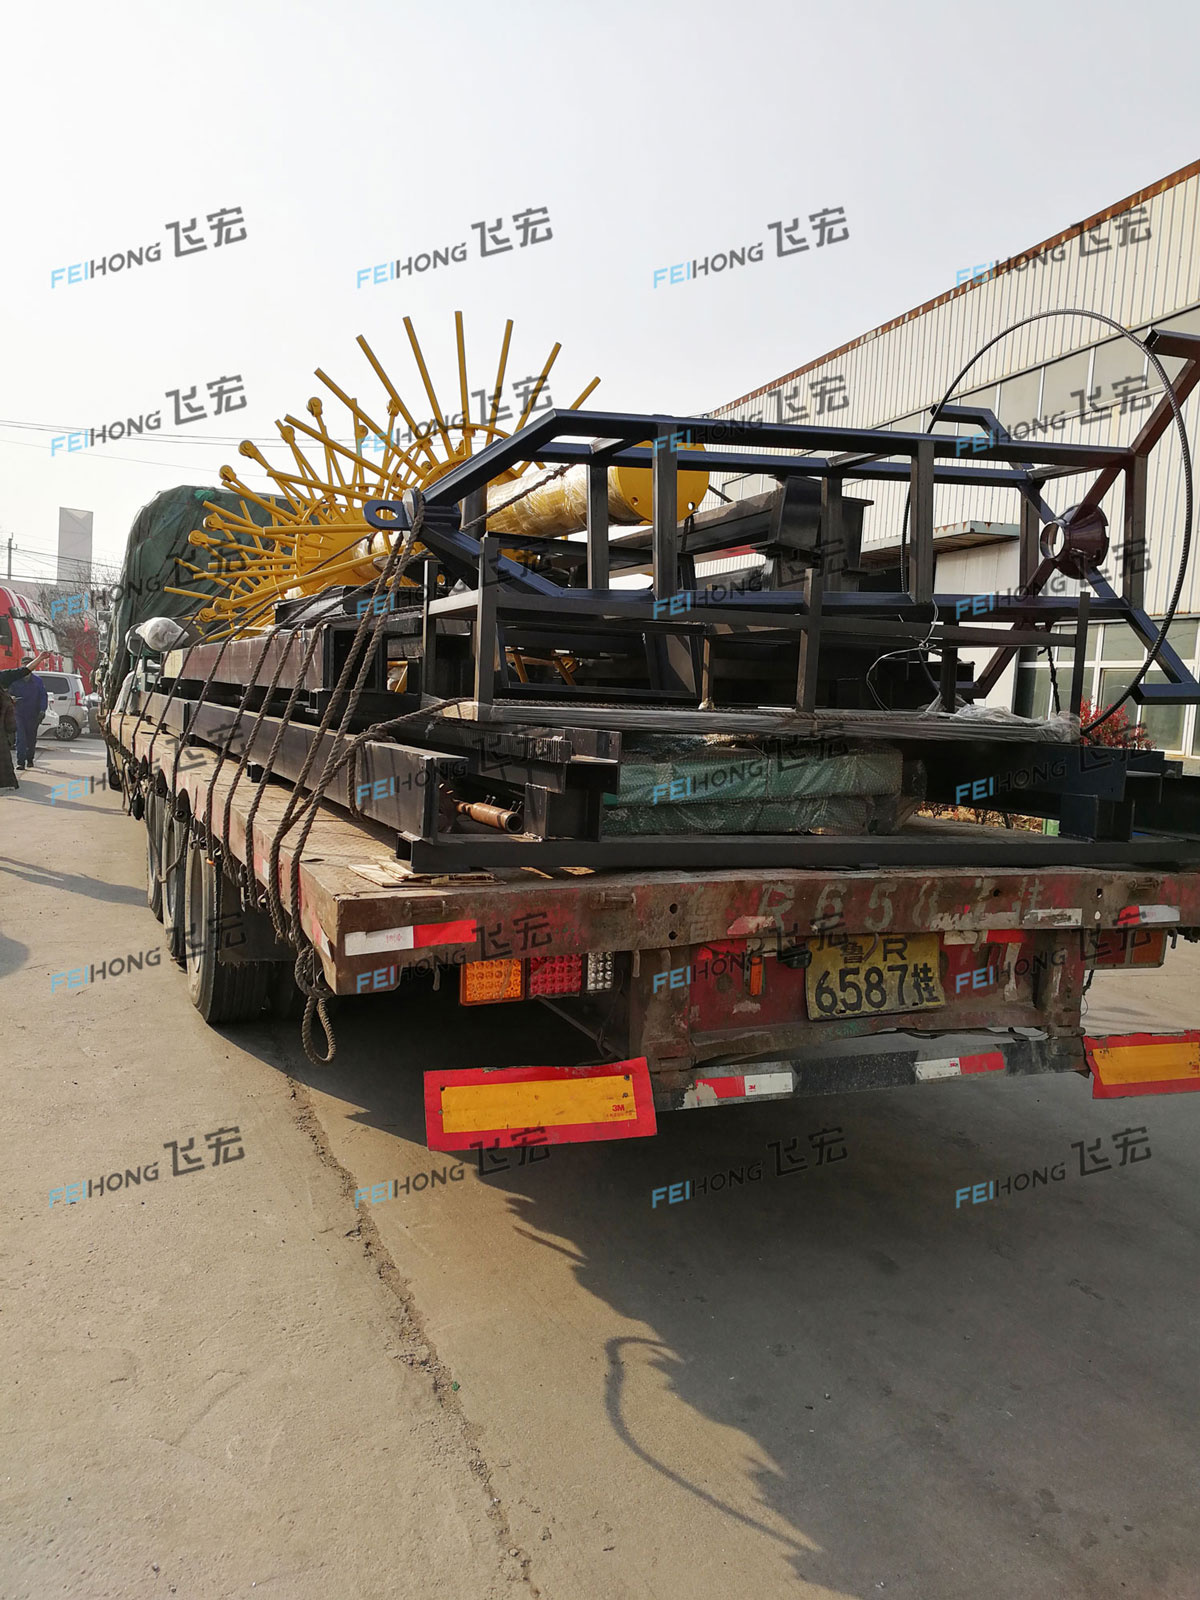 祝贺飞宏智能钢筋加工设备进驻中铁上海工程局集团第七工程有限公司《飞宏原创》